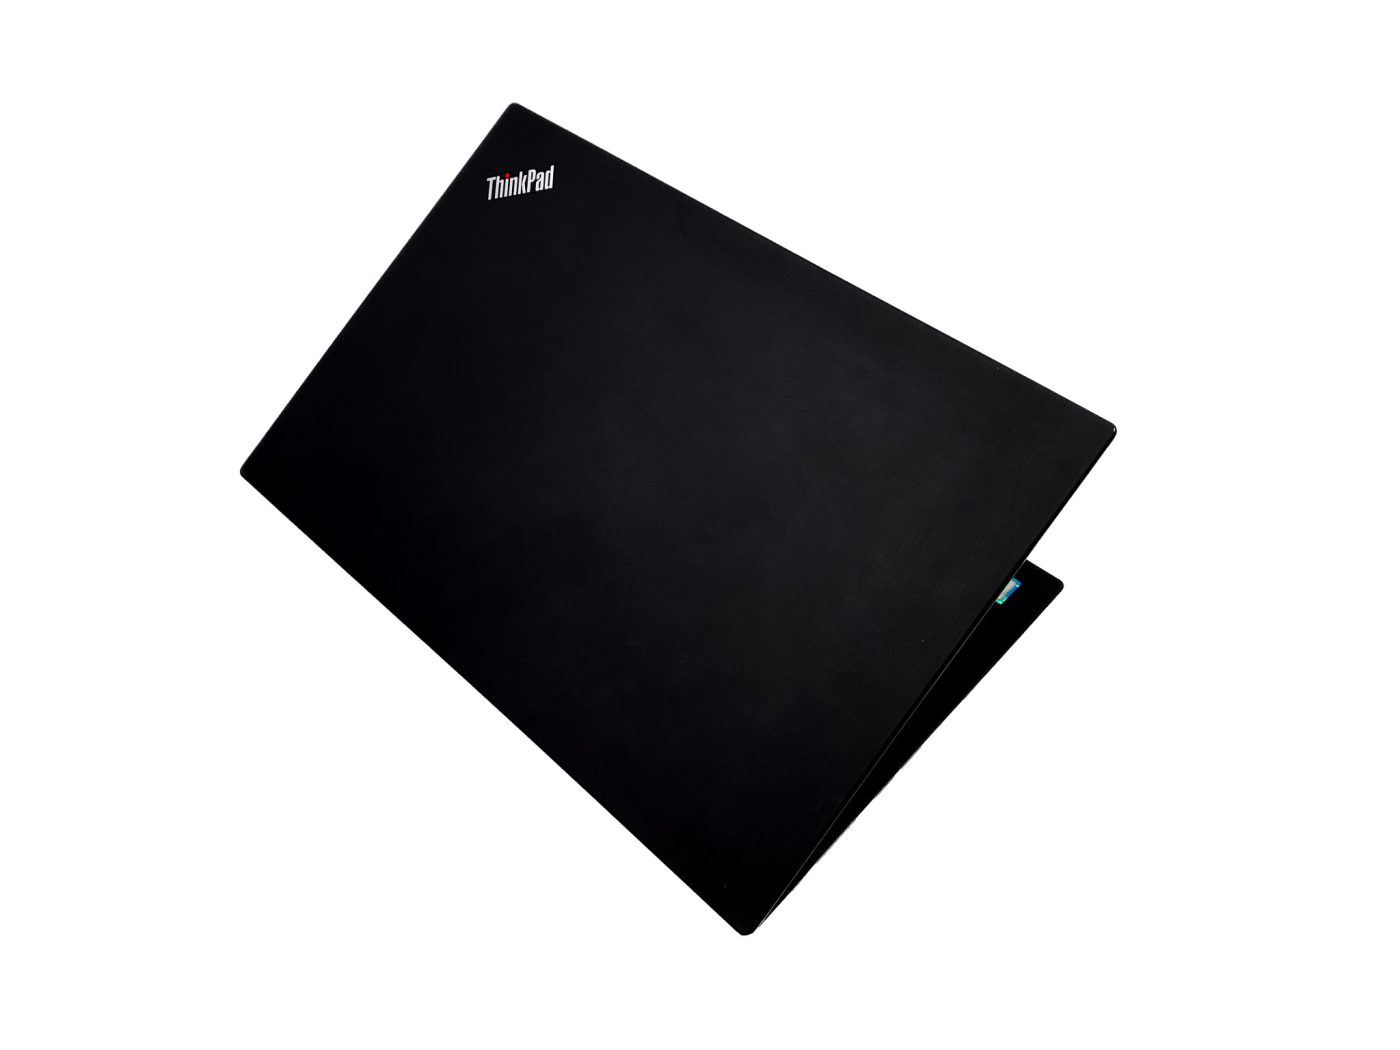 ThinkPad T490 - Twój biznesowy kompan w podróży! Odkryj smukły i lekki laptop ThinkPad T490, stworzony dla mobilnych profesjonalistów.